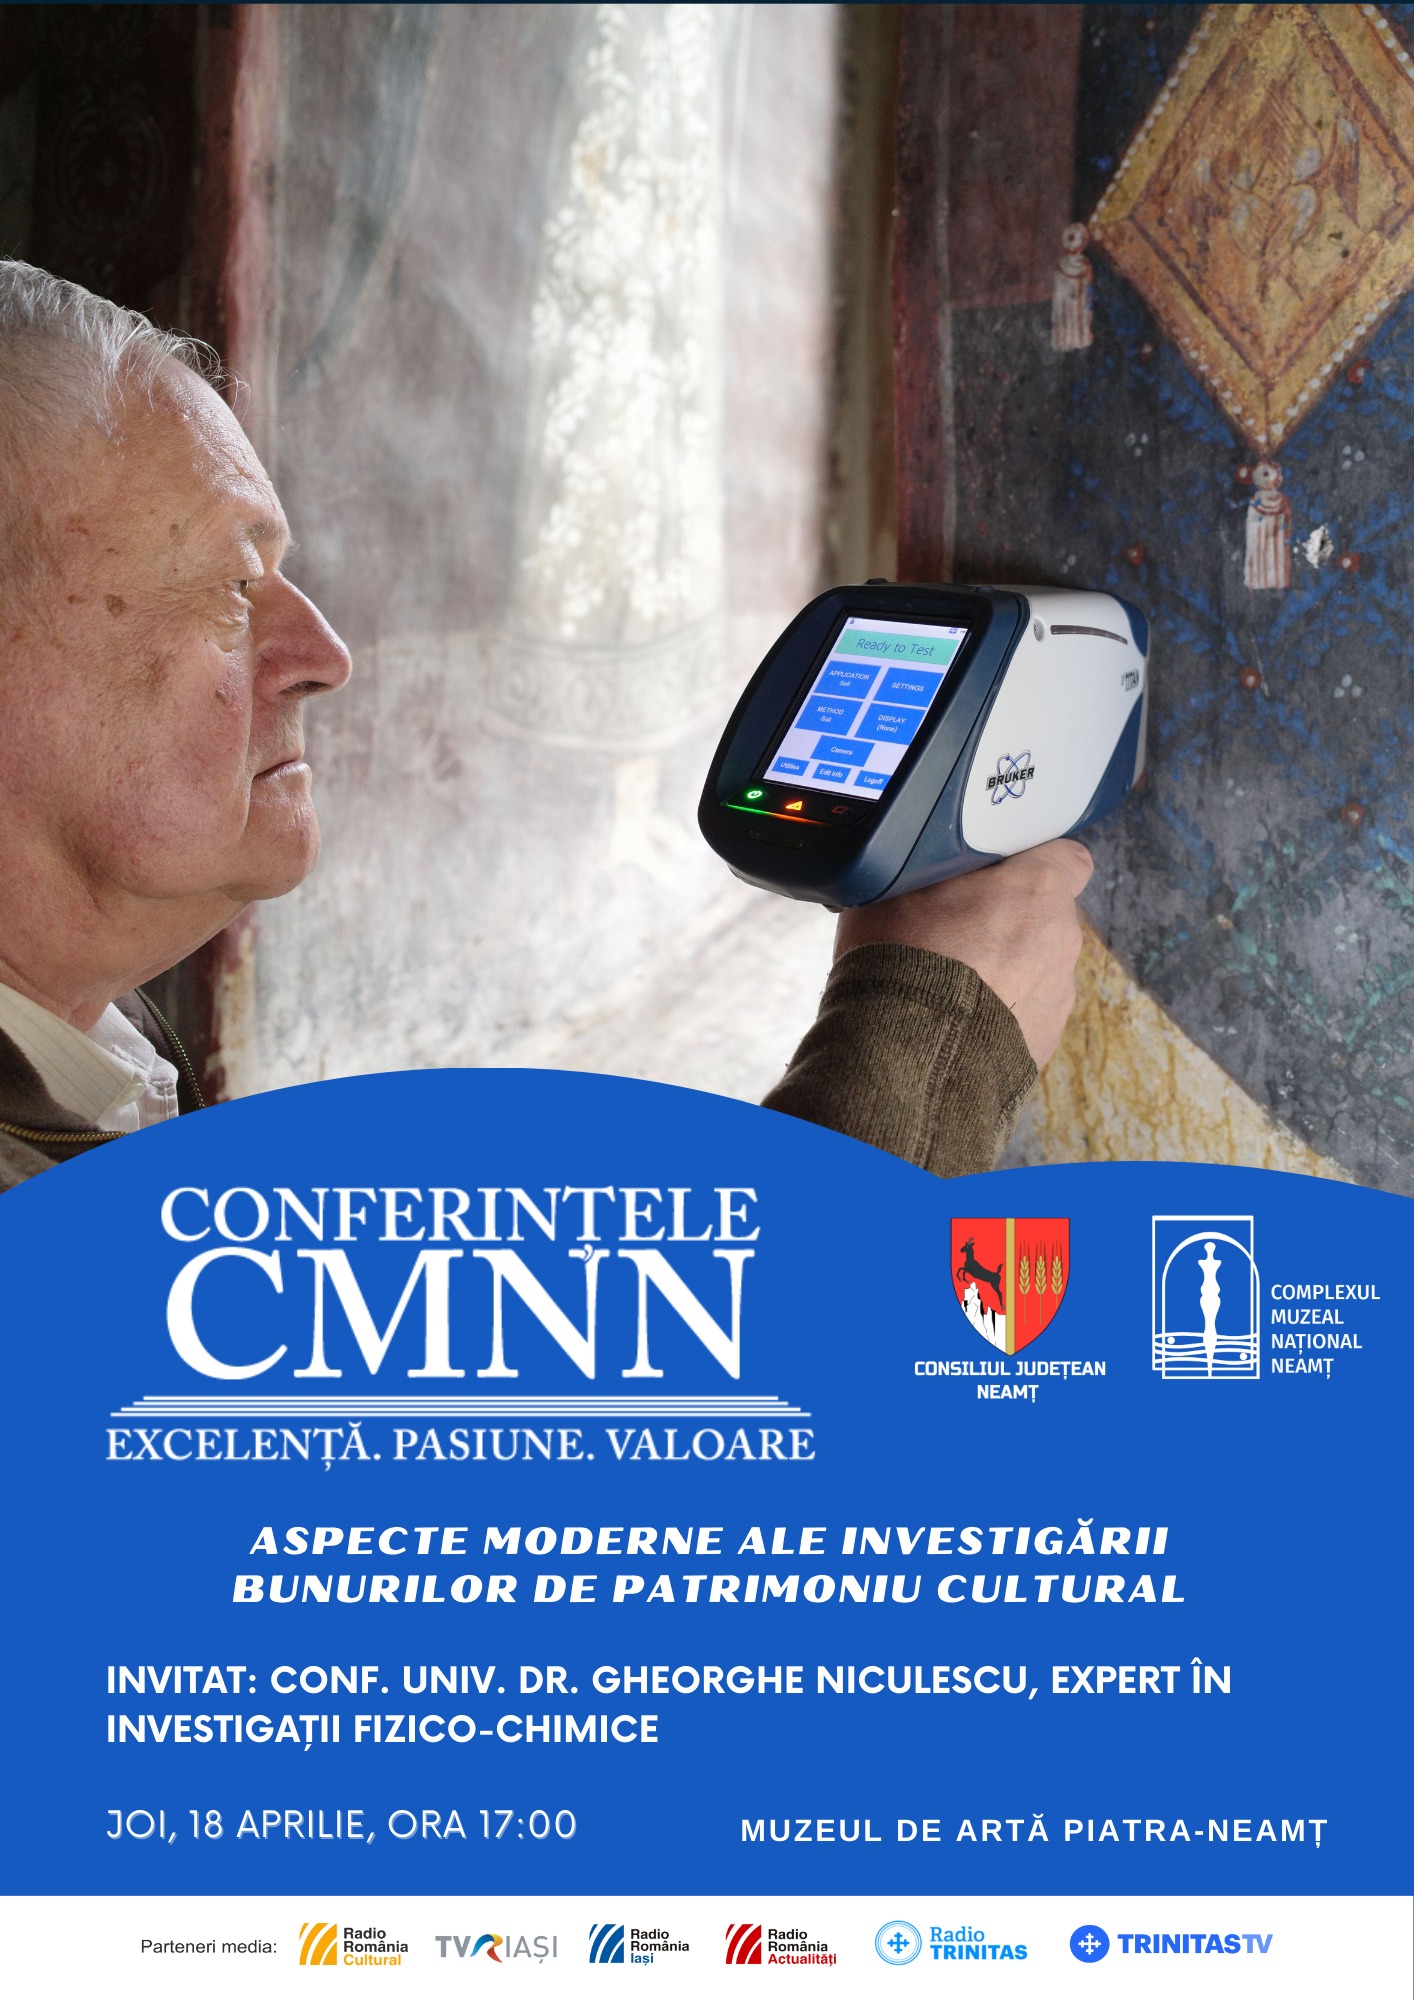 Conferințele CMNN - ”Aspecte moderne ale investigării bunurilor de patrimoniu cultural”